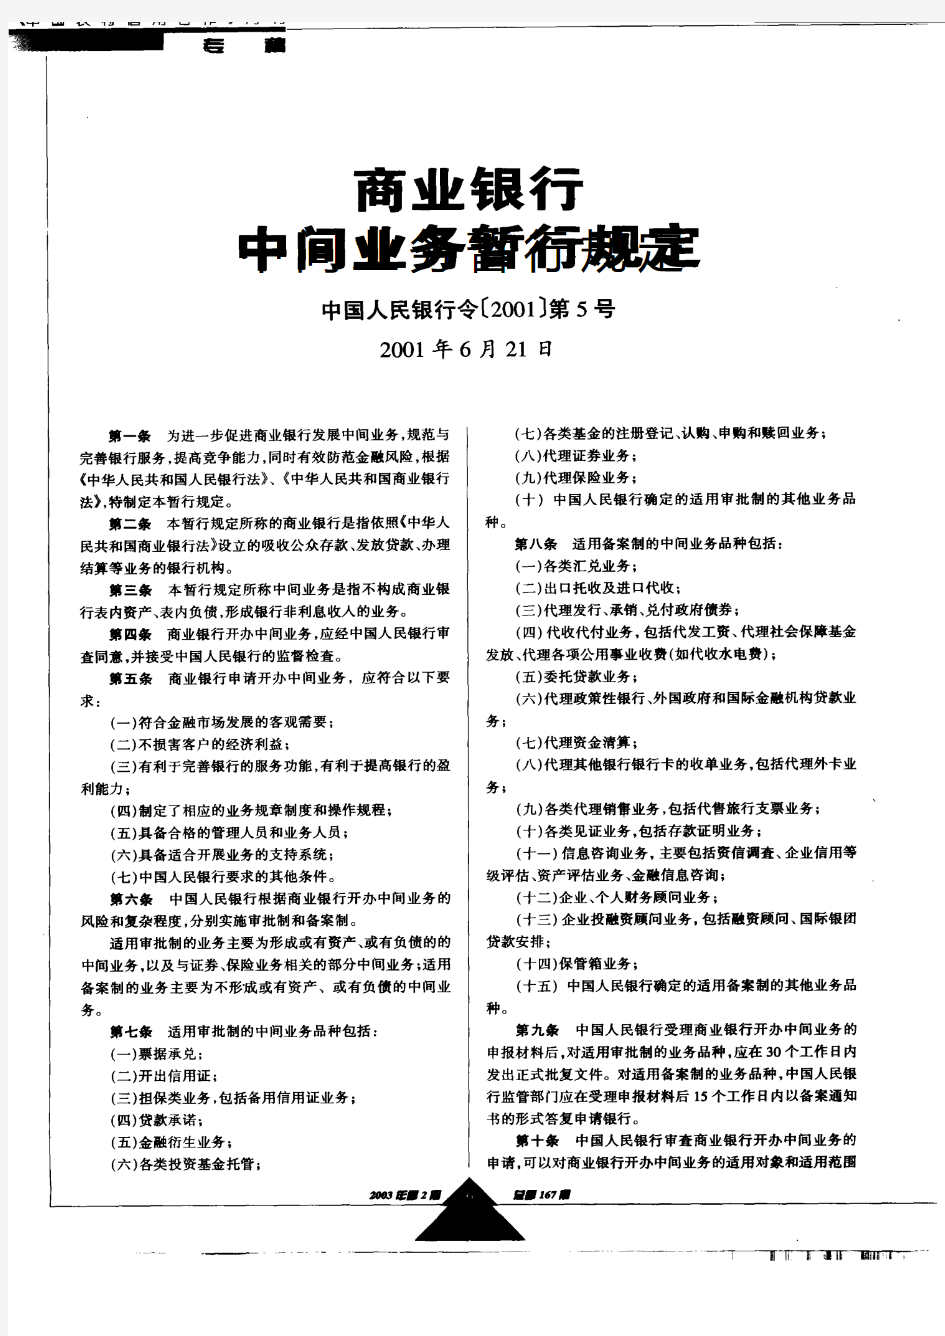 (中国人民银行令[2001]第5号)商业银行中间业务暂行规定